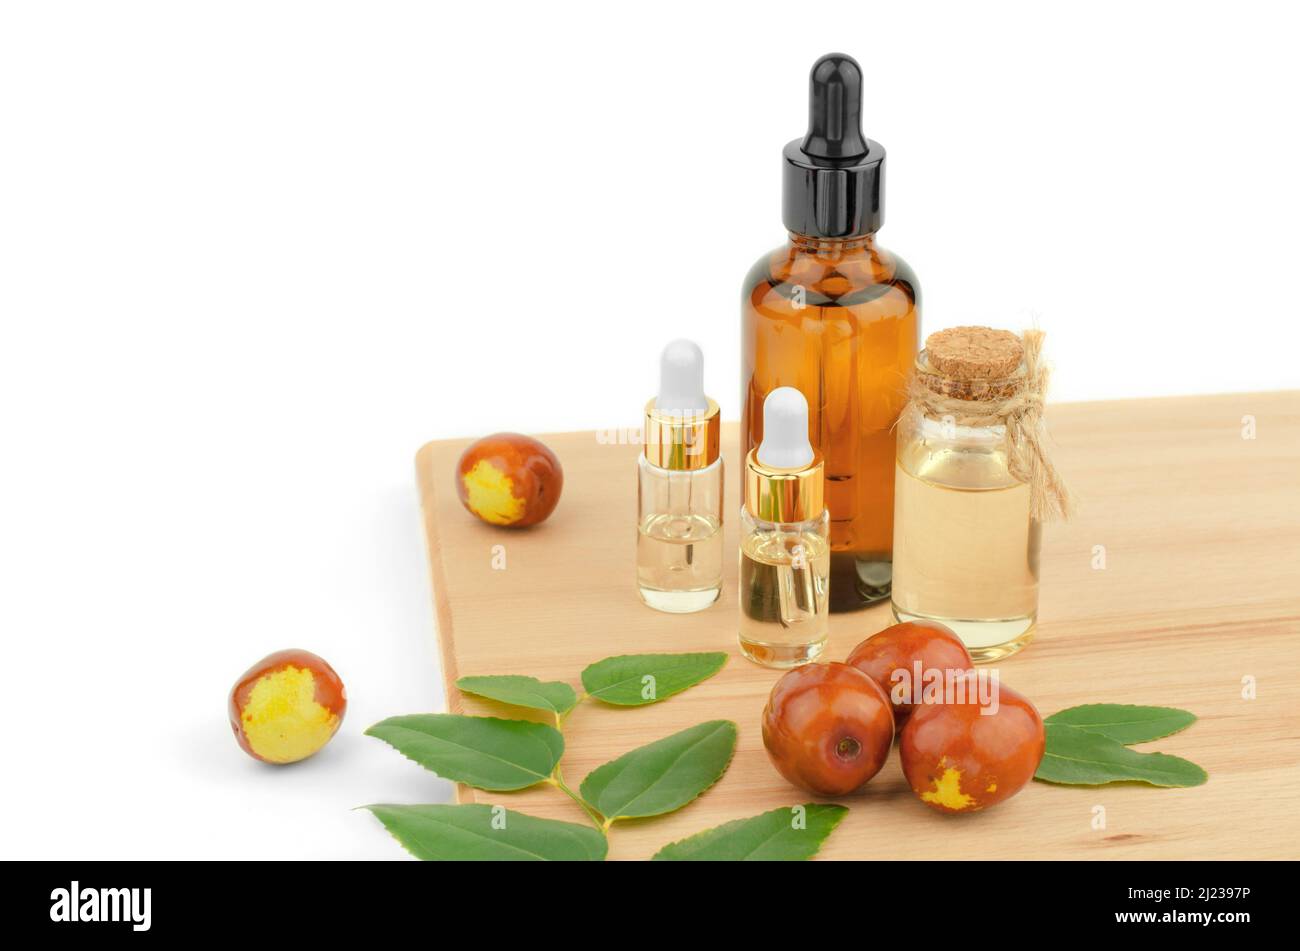 Jojoba oil bottles. Jojoba oil and fresh jojoba fruit on wooden table Stock Photo